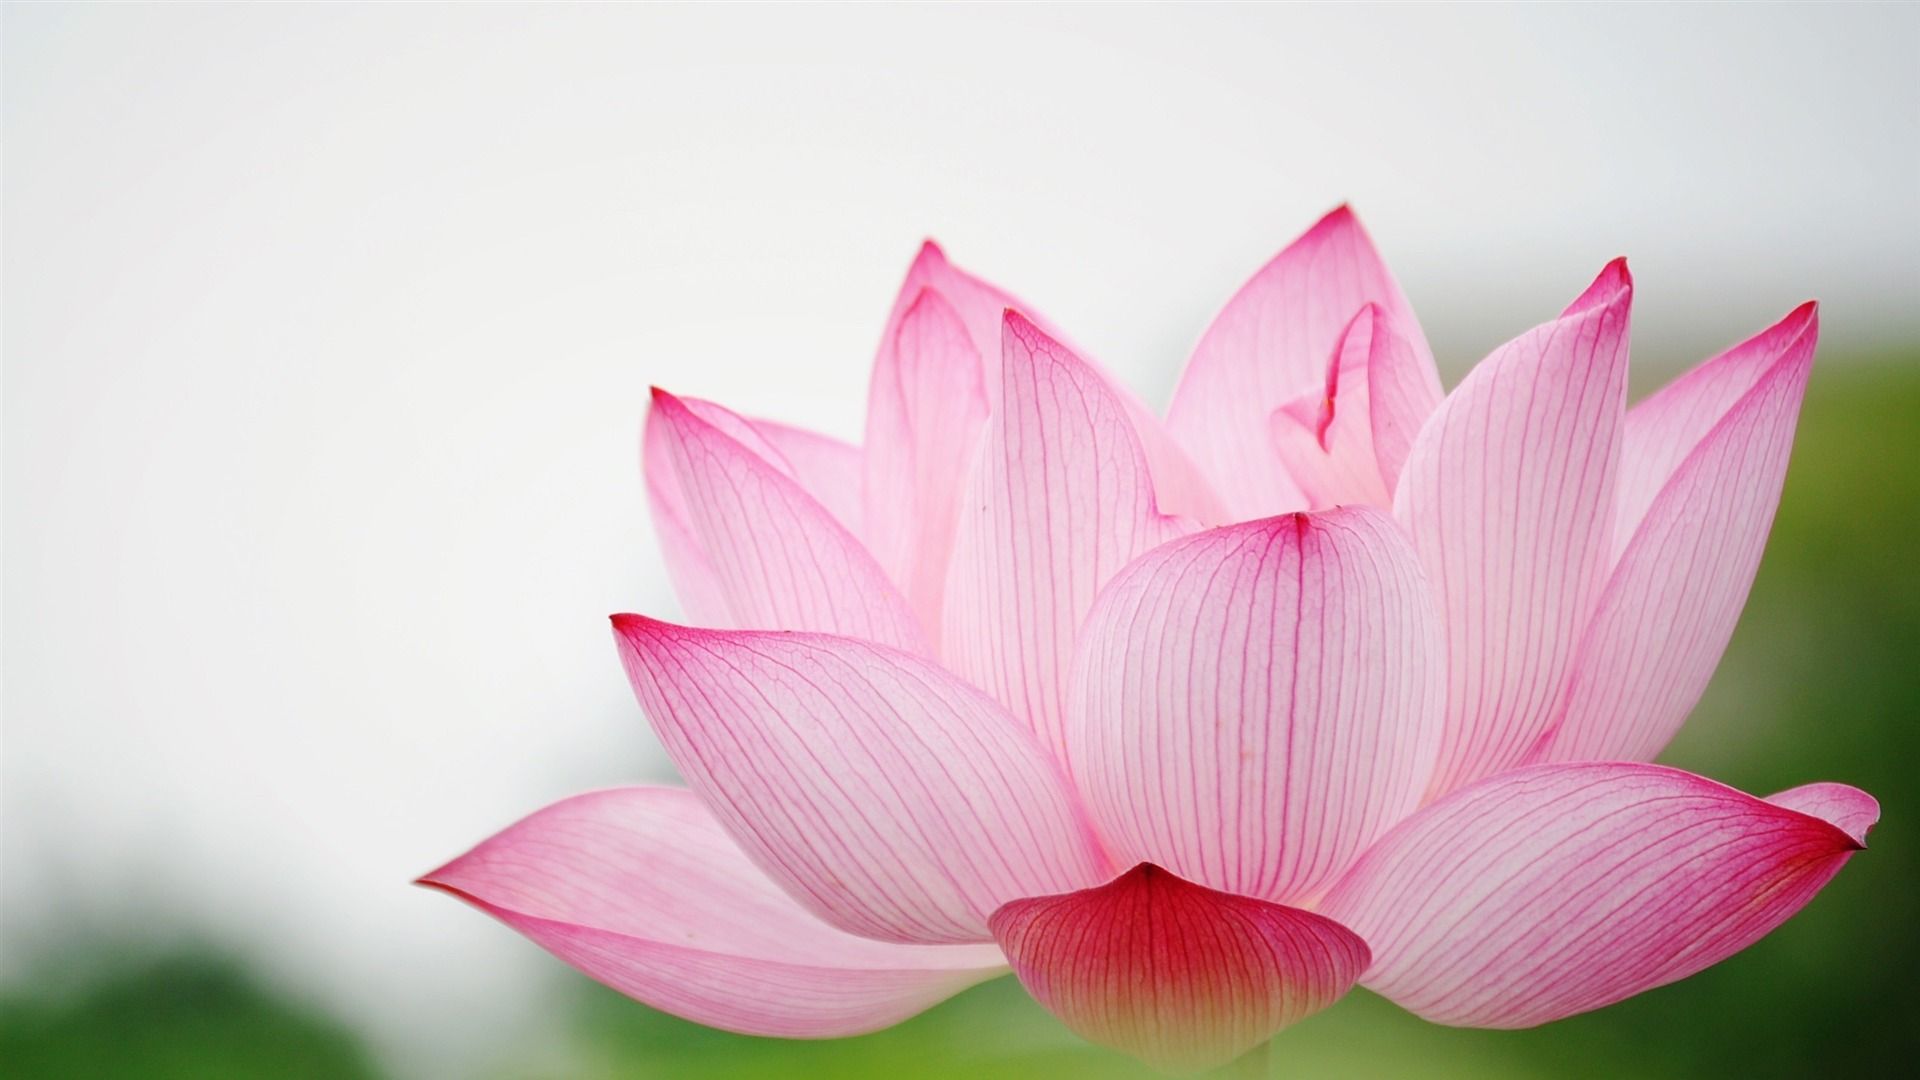 Lotus download wallpaper image